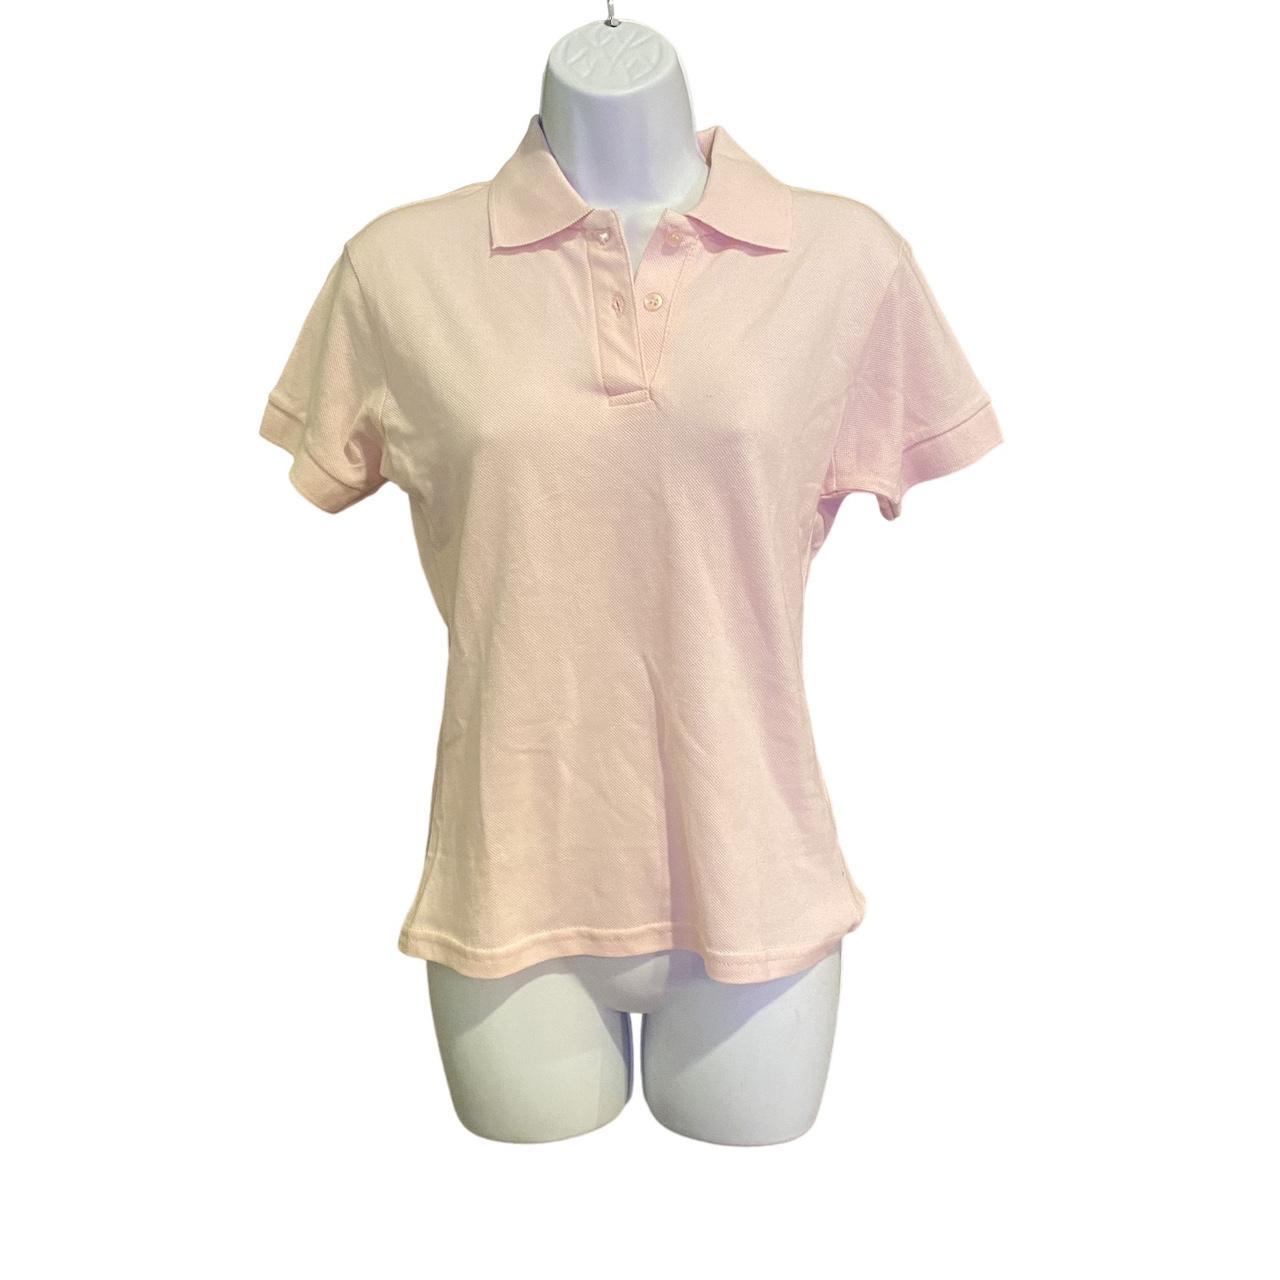 Women's Shirt - Pink - L